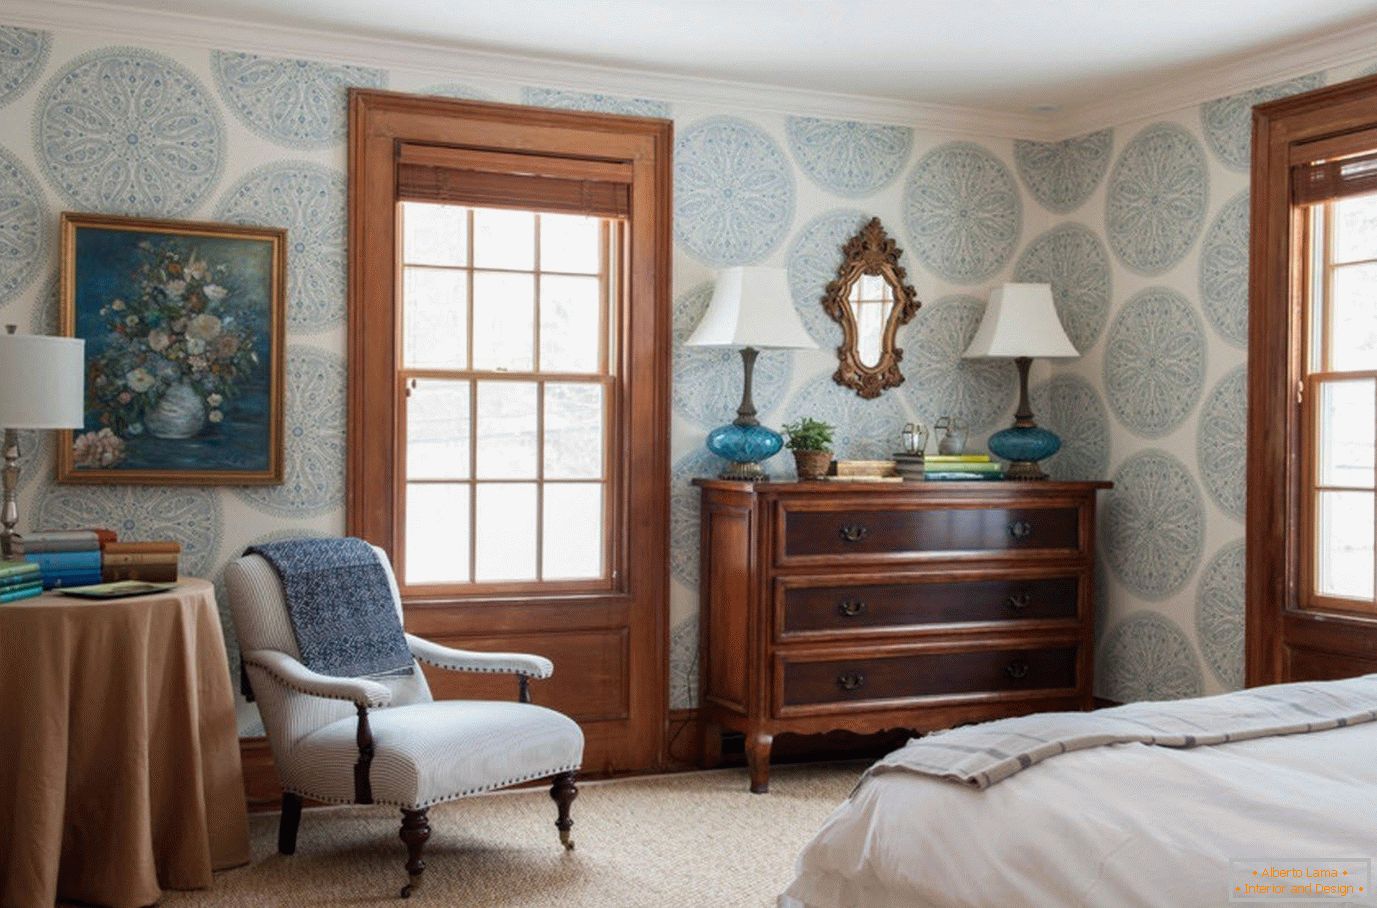 Papel de parede azul com um ornamento no quarto